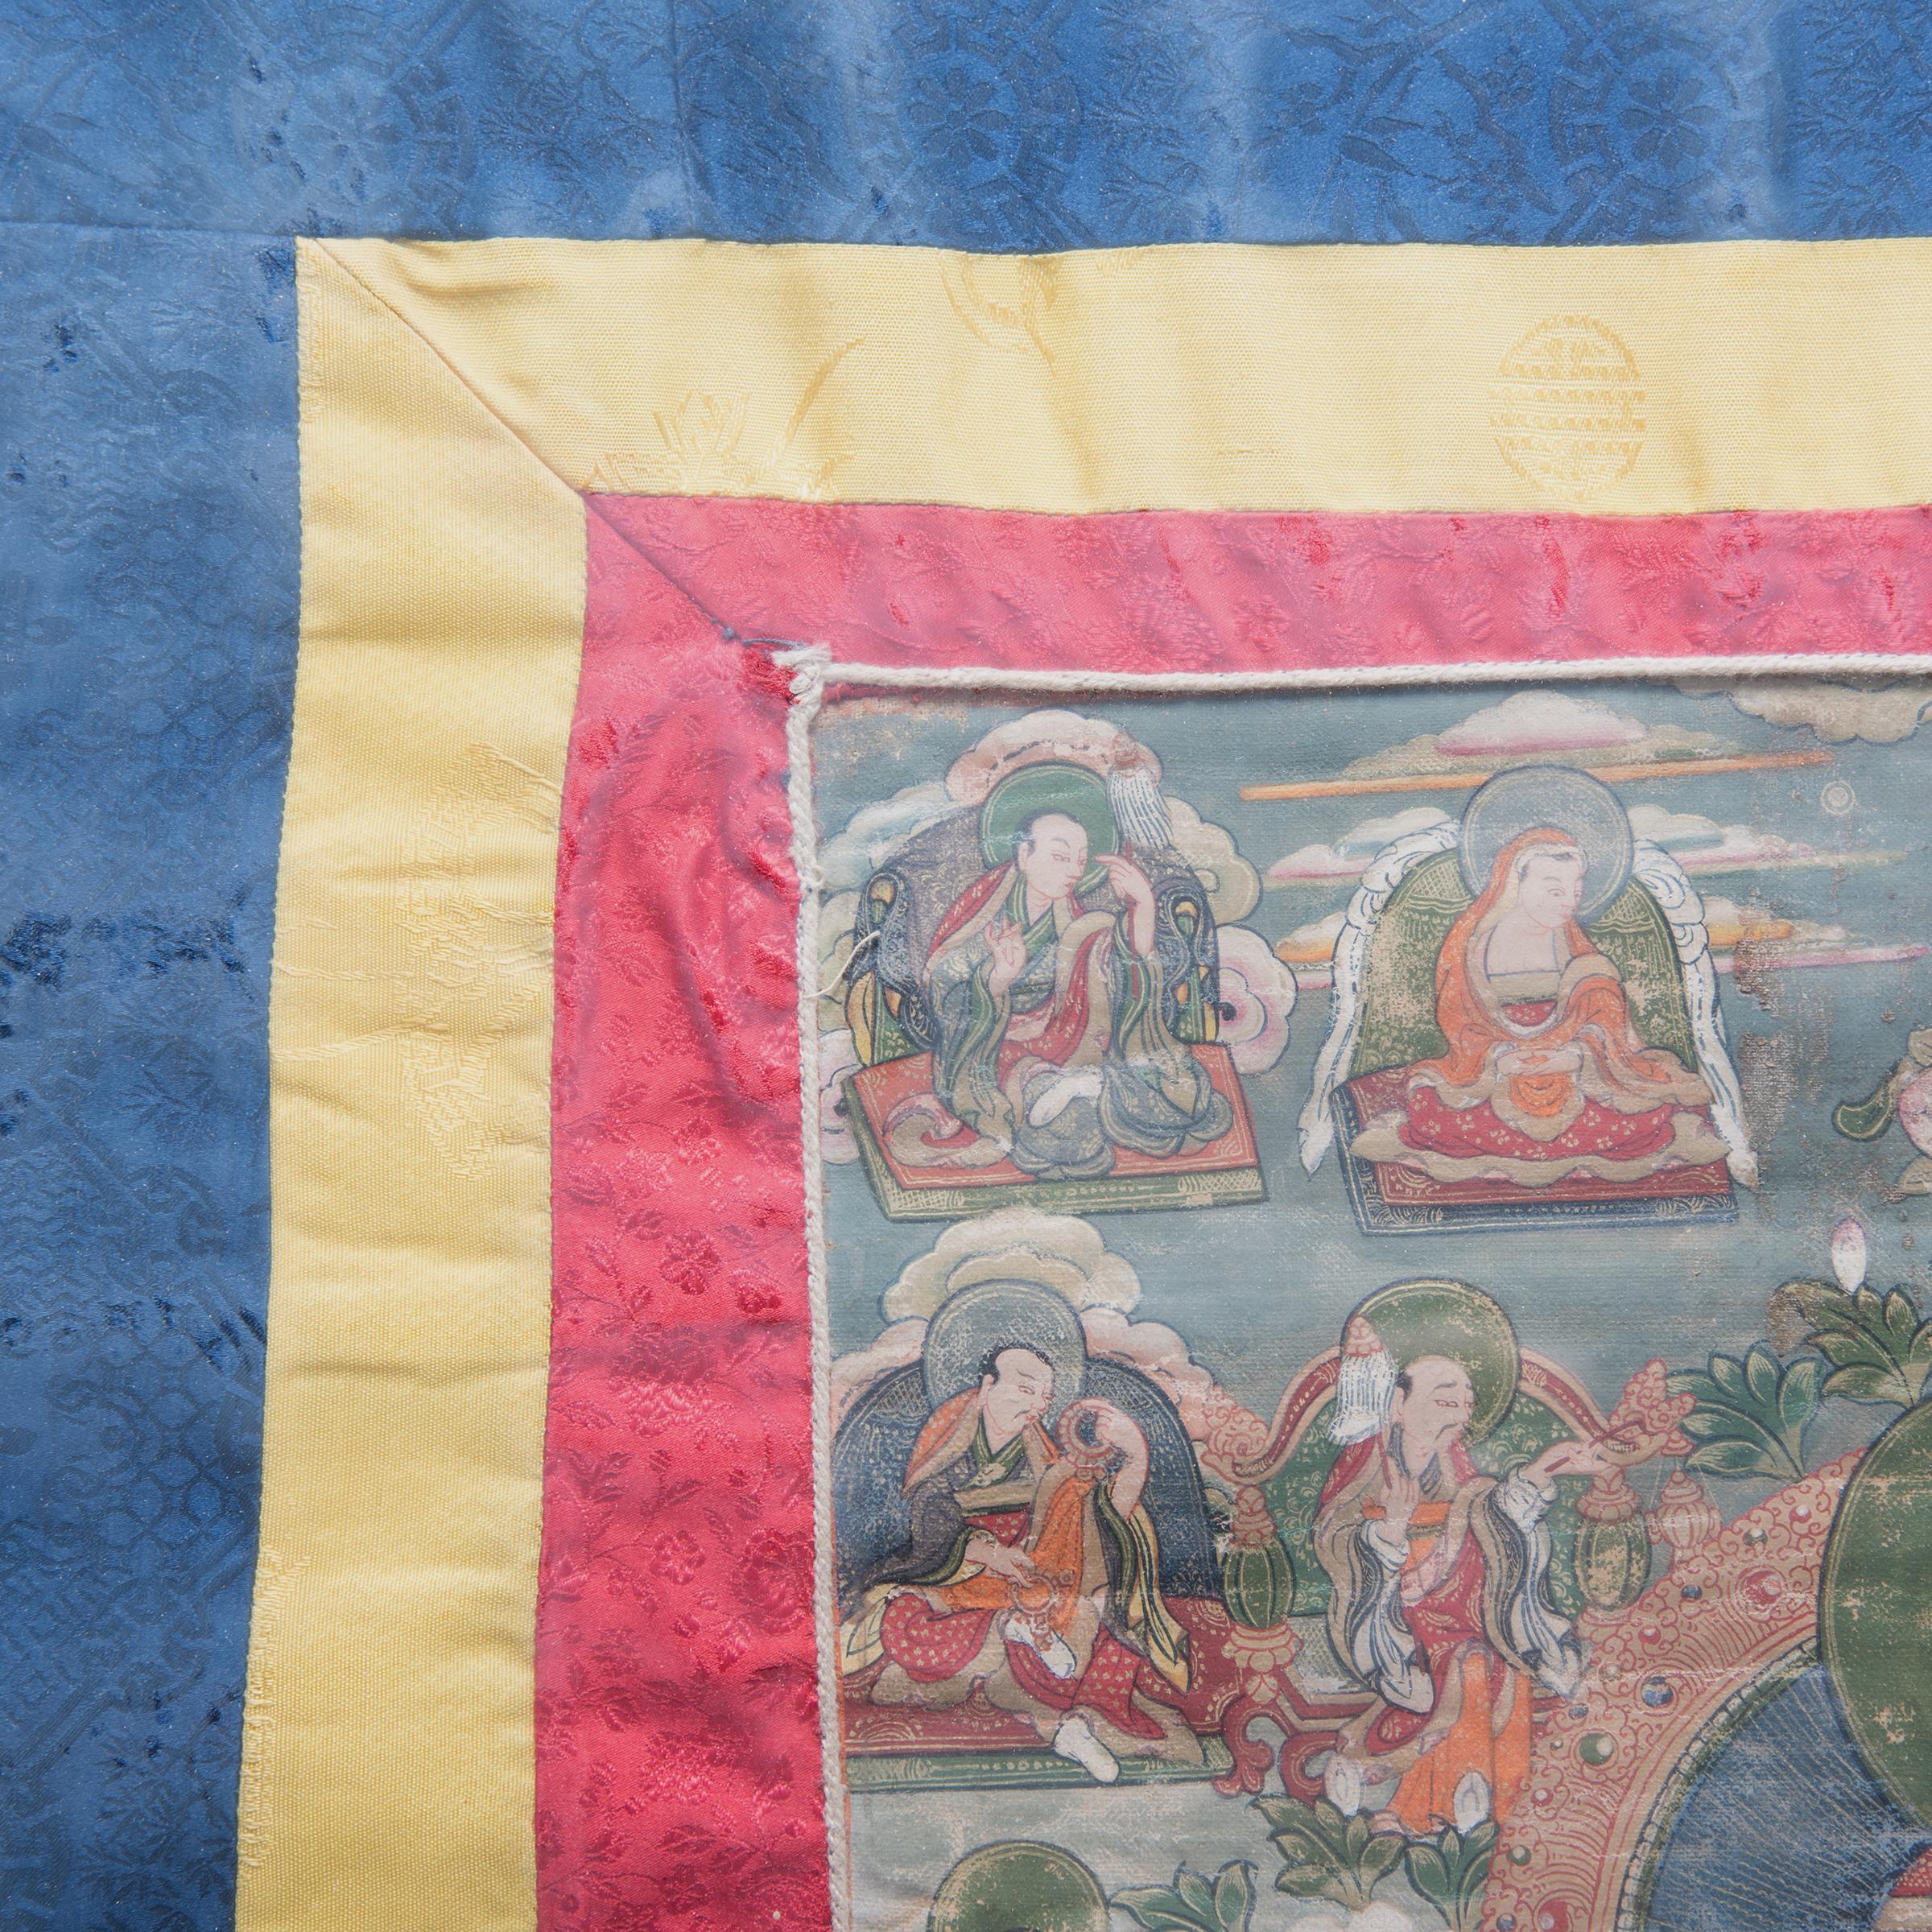 Historiquement, au Tibet bouddhiste, les mécènes et les moines commandaient des thangka, ou peintures sacrées, pour concentrer leurs méditations et leurs prières. Ce thangka tibétain du XIXe siècle, peint avec de riches pigments rouges, verts et